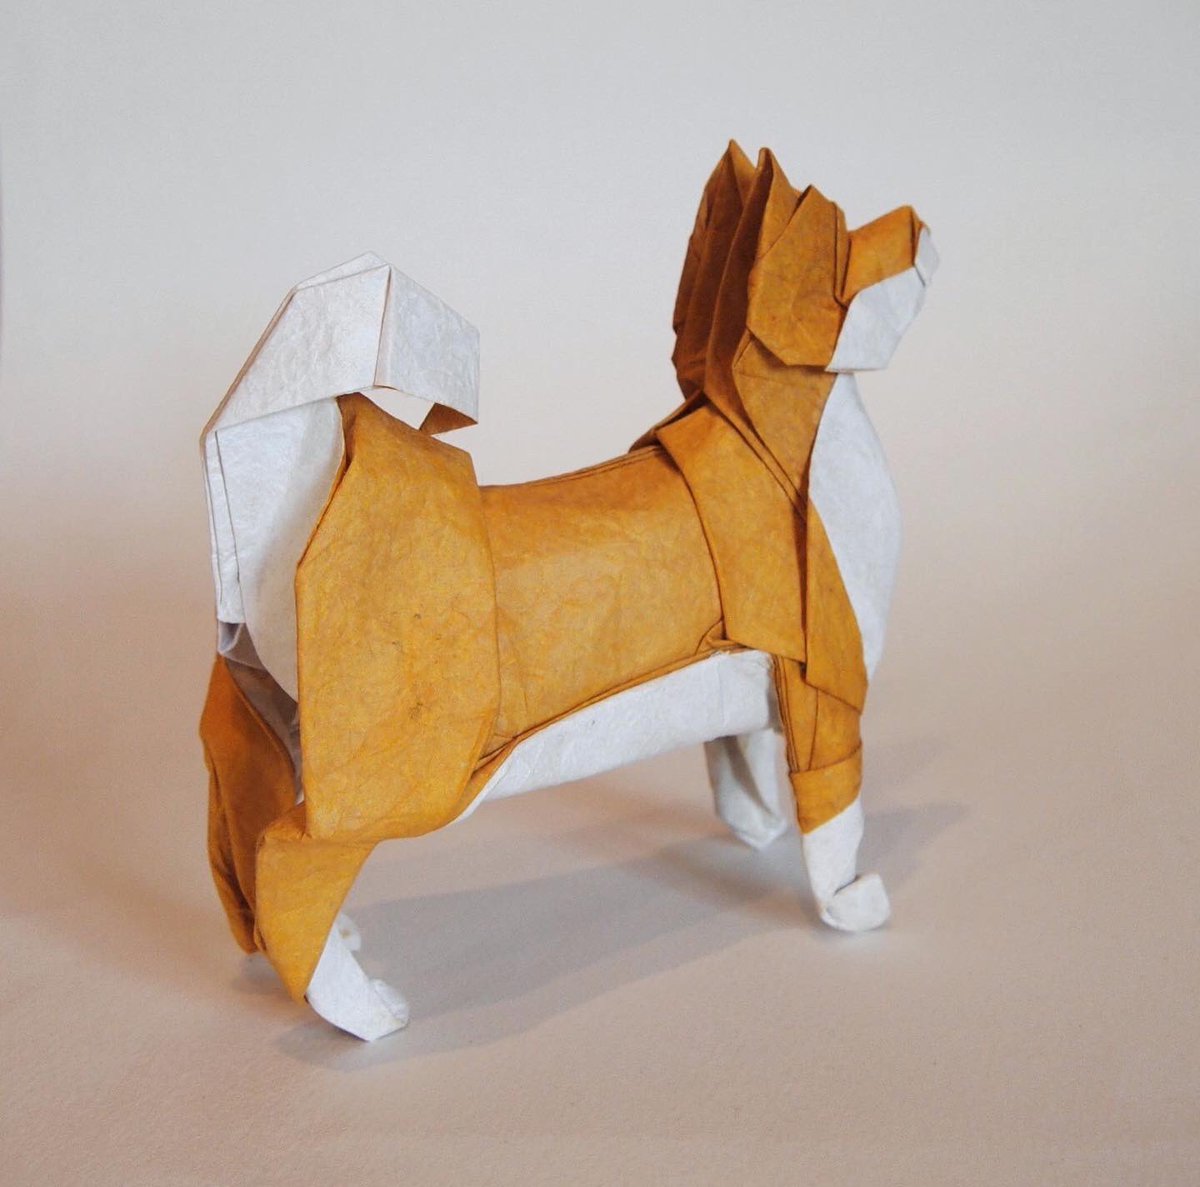 一匹柴犬 折り紙作品 柴犬 創作 折り 一匹柴犬 昔折った柴犬 をリニューアルしました 下半身を改善 だいたい説明できる折り方にできたので いつか 折り図描きます Origami Dog 折り紙 折り紙作品 柴犬 T Co Trxaeevo1m Twitter